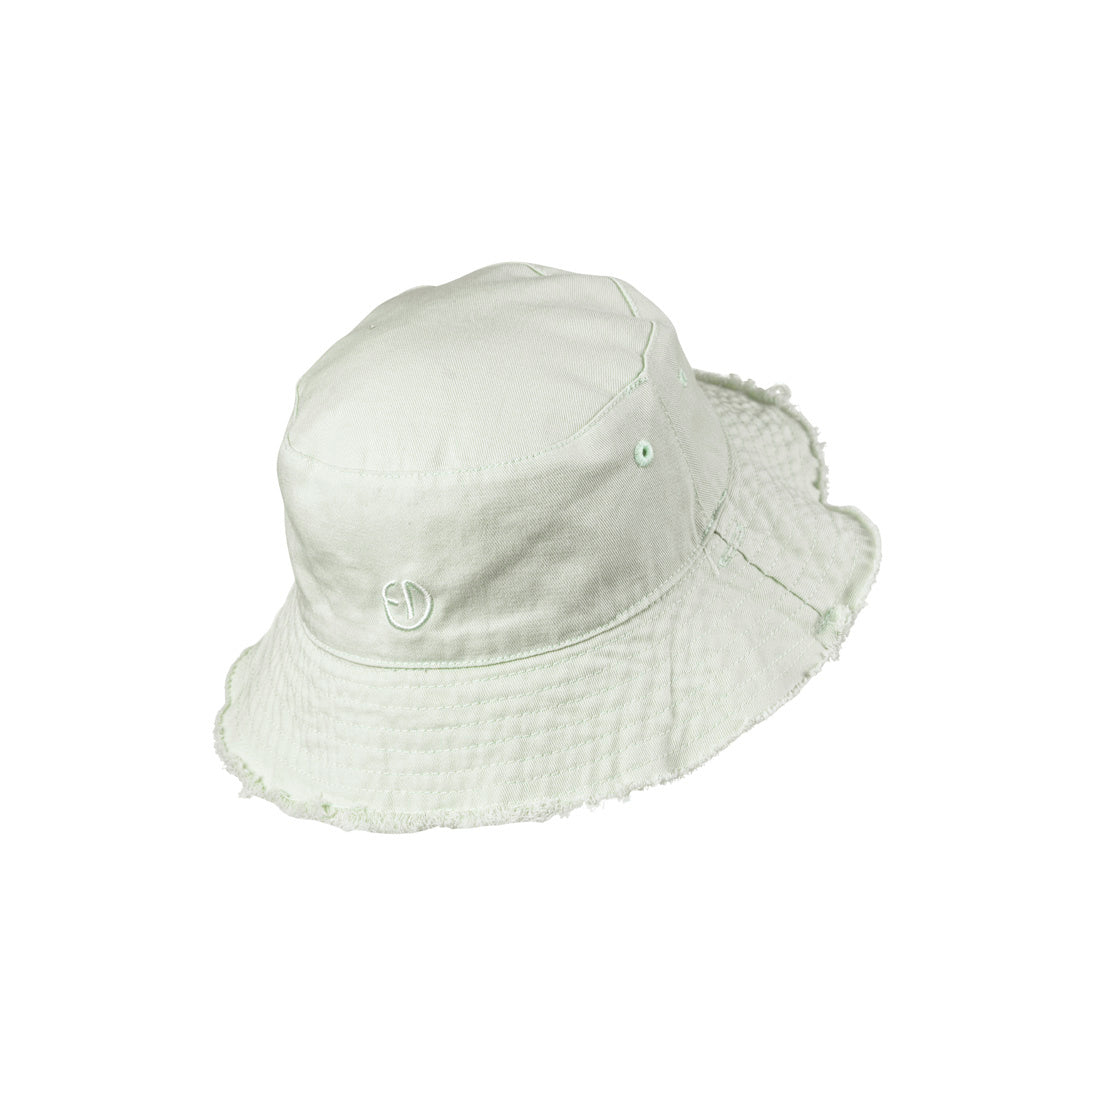 Деталі ELODIE - капелюх капелюх - Gelato Green - 0-6 місяців